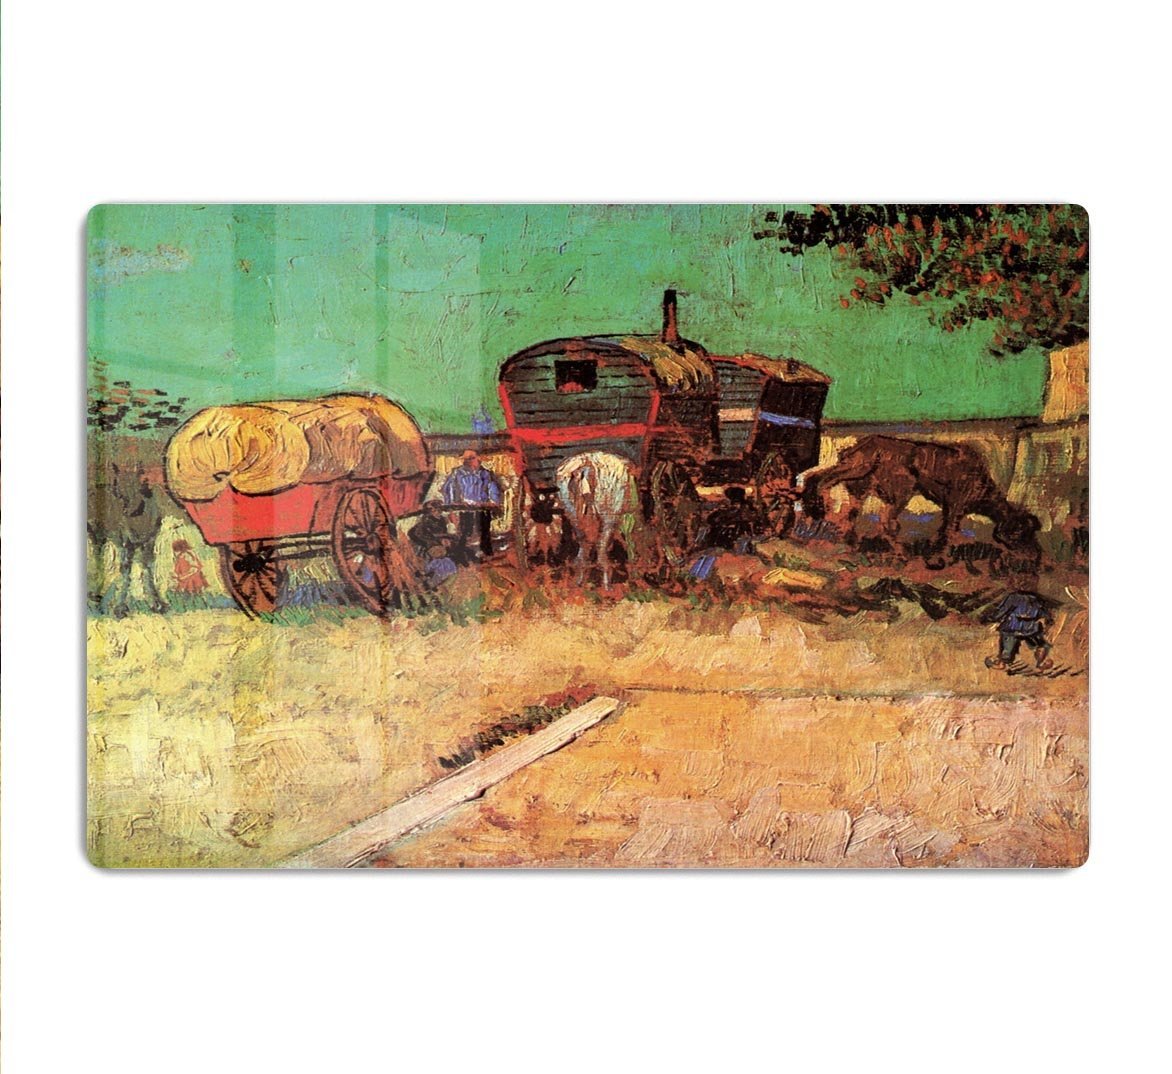 Encampment of Gypsies with Caravans by Van Gogh HD Metal Print